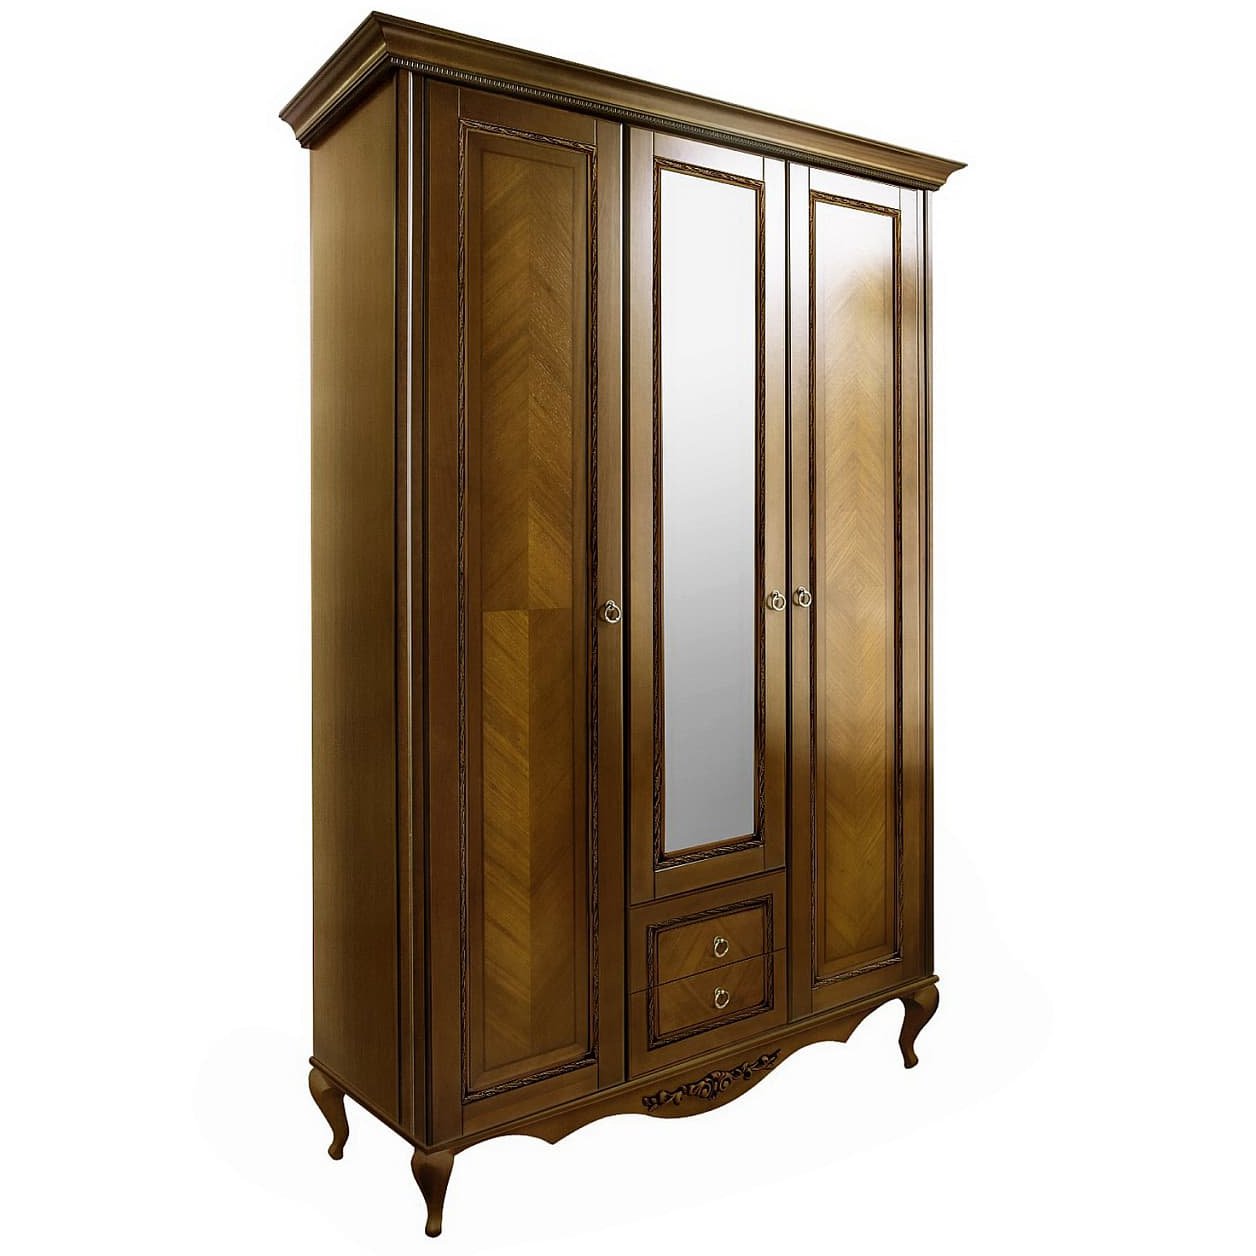 Шкаф платяной Timber Неаполь, 3-х дверный с зеркалом 159x65x227 см, цвет: орех (Т-523/N)Т-523